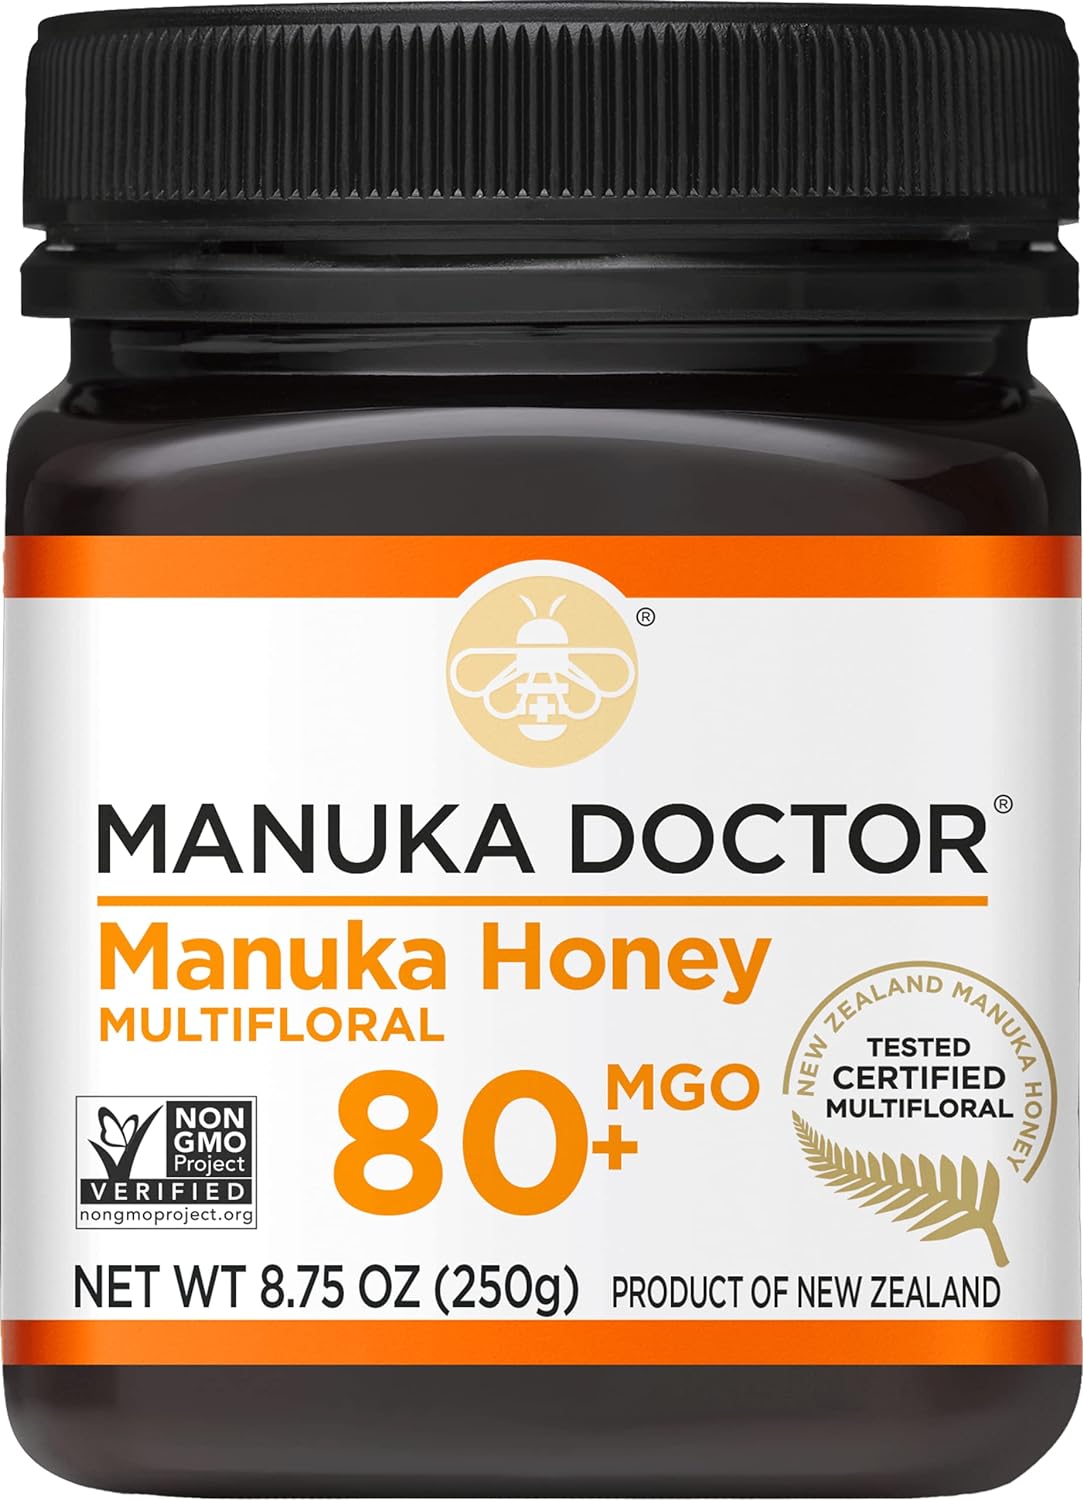 MANUKA DOCTOR - MGO 80+ Manuka Honey Multifloral, 100% Pure New Zealand Honey